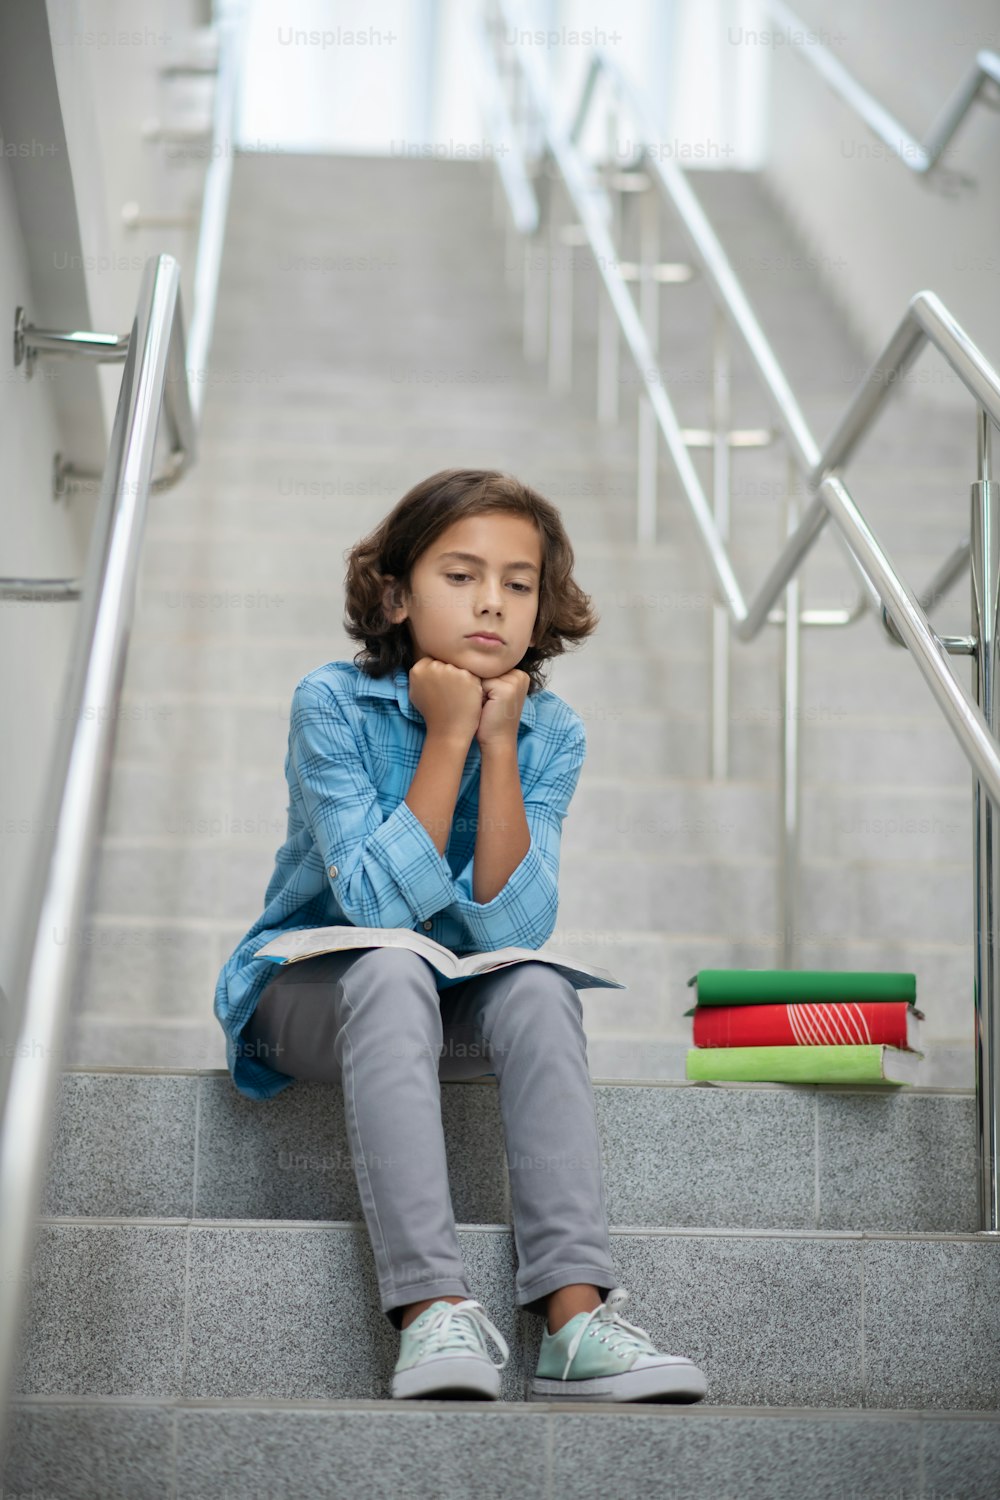 슬픔, 기분. 하늘색 rtsbashka와 회색 바지를 입은 슬픈 소년이 도시 계단에 앉아 책을 손에 얹고 있습니다